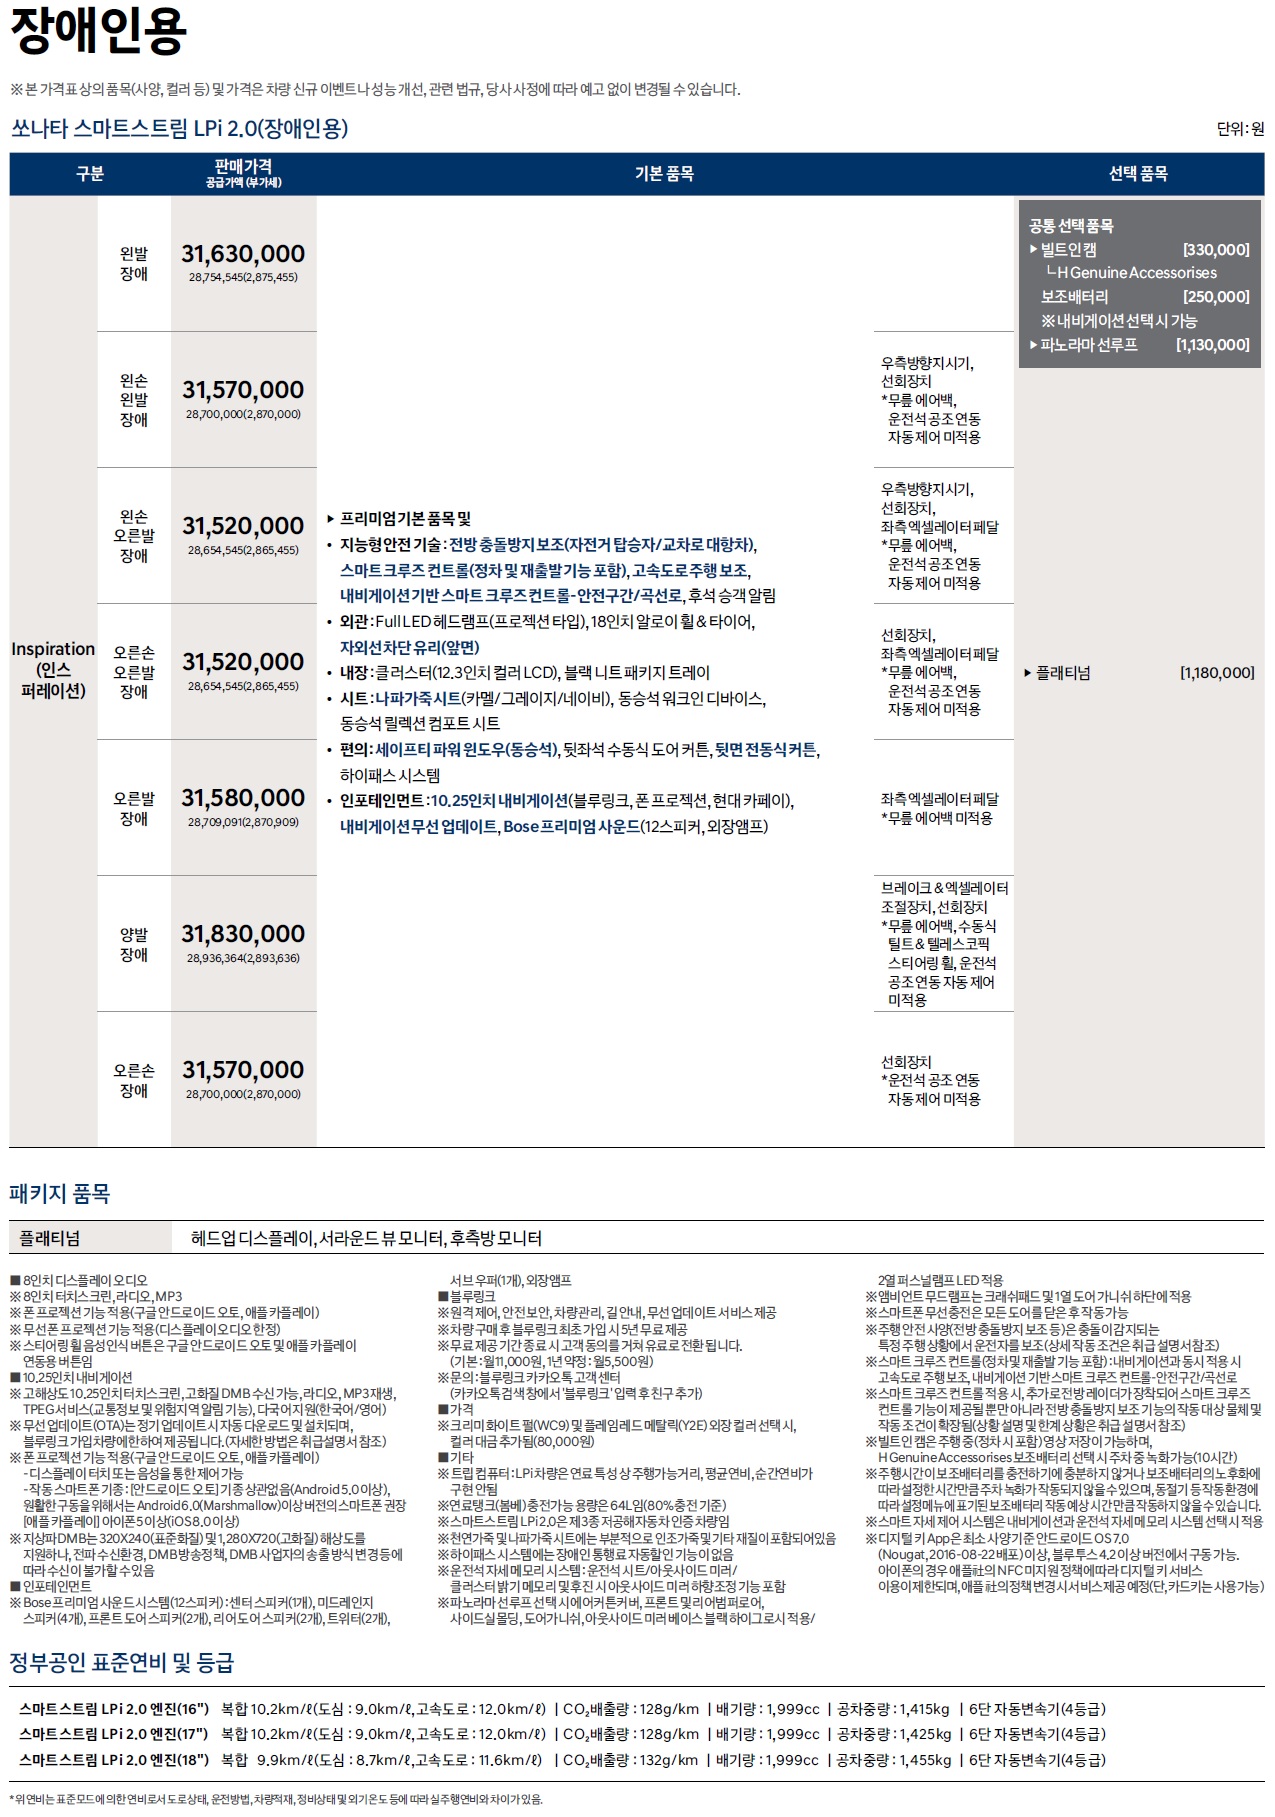 쏘나타 가격표 - 2022년 07월 (2023년형) -6.jpg